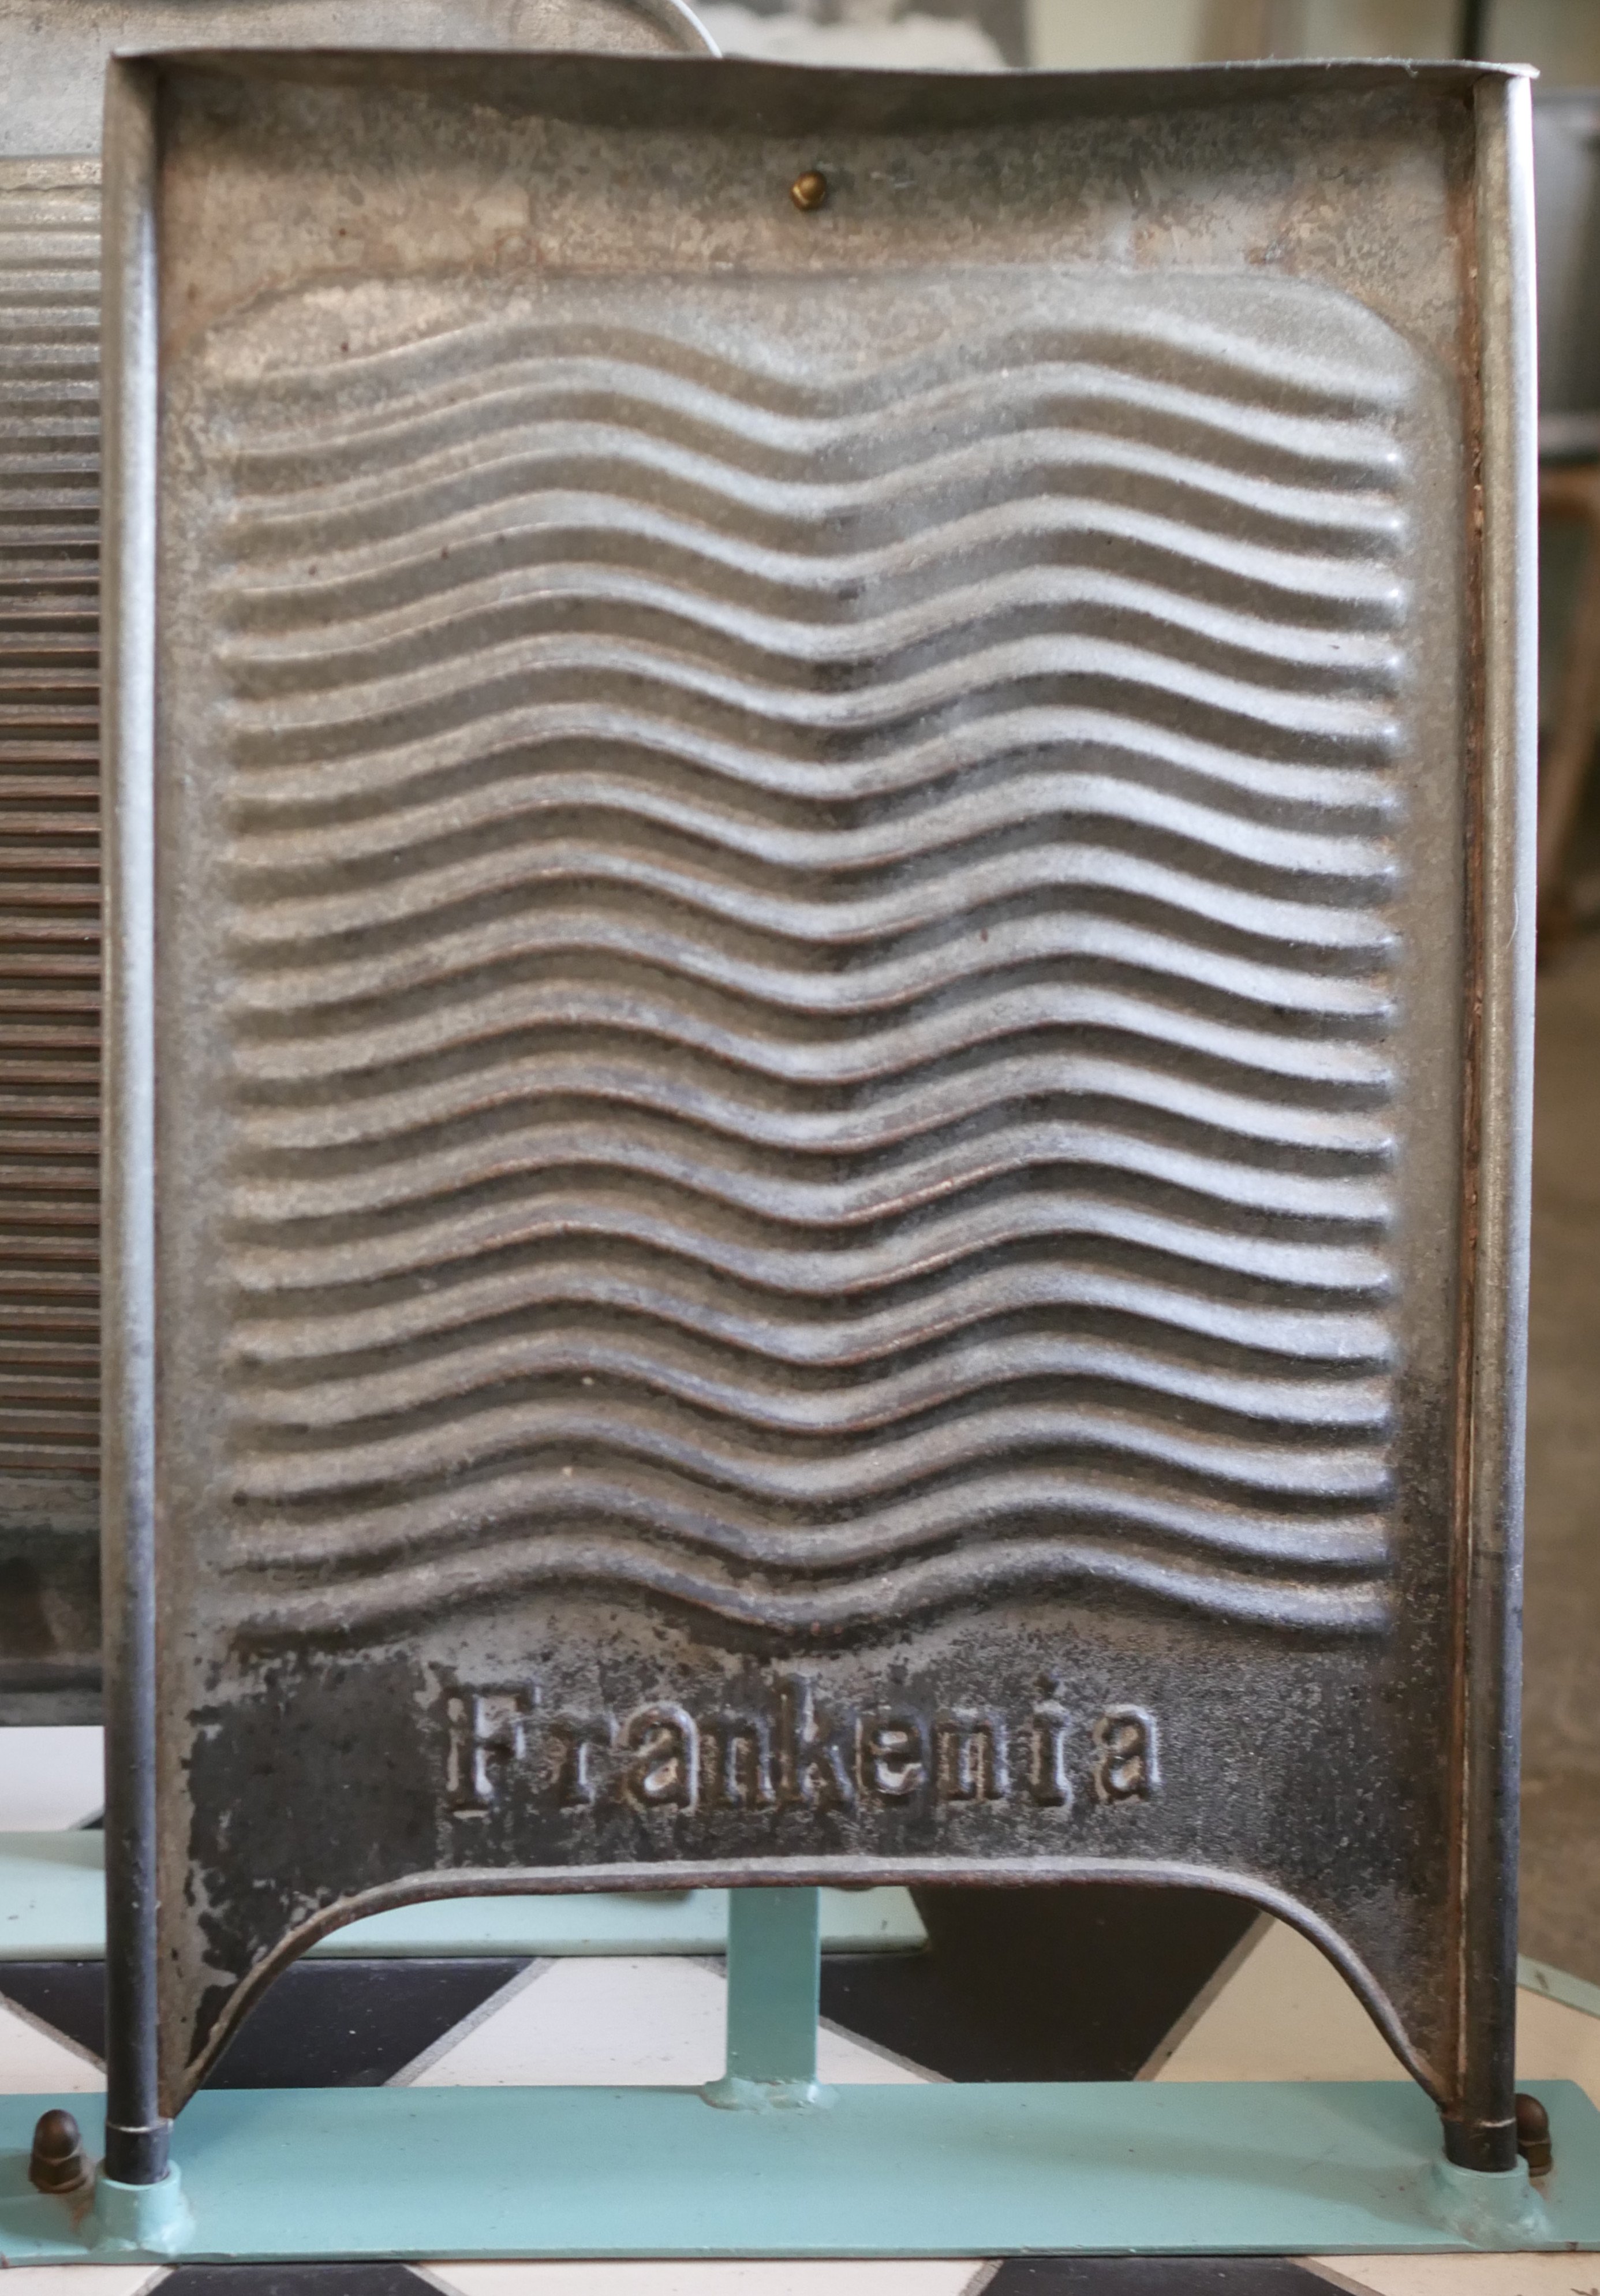 Waschbrett der Firma Frankenia (Freilichtmuseum Roscheider Hof CC0)